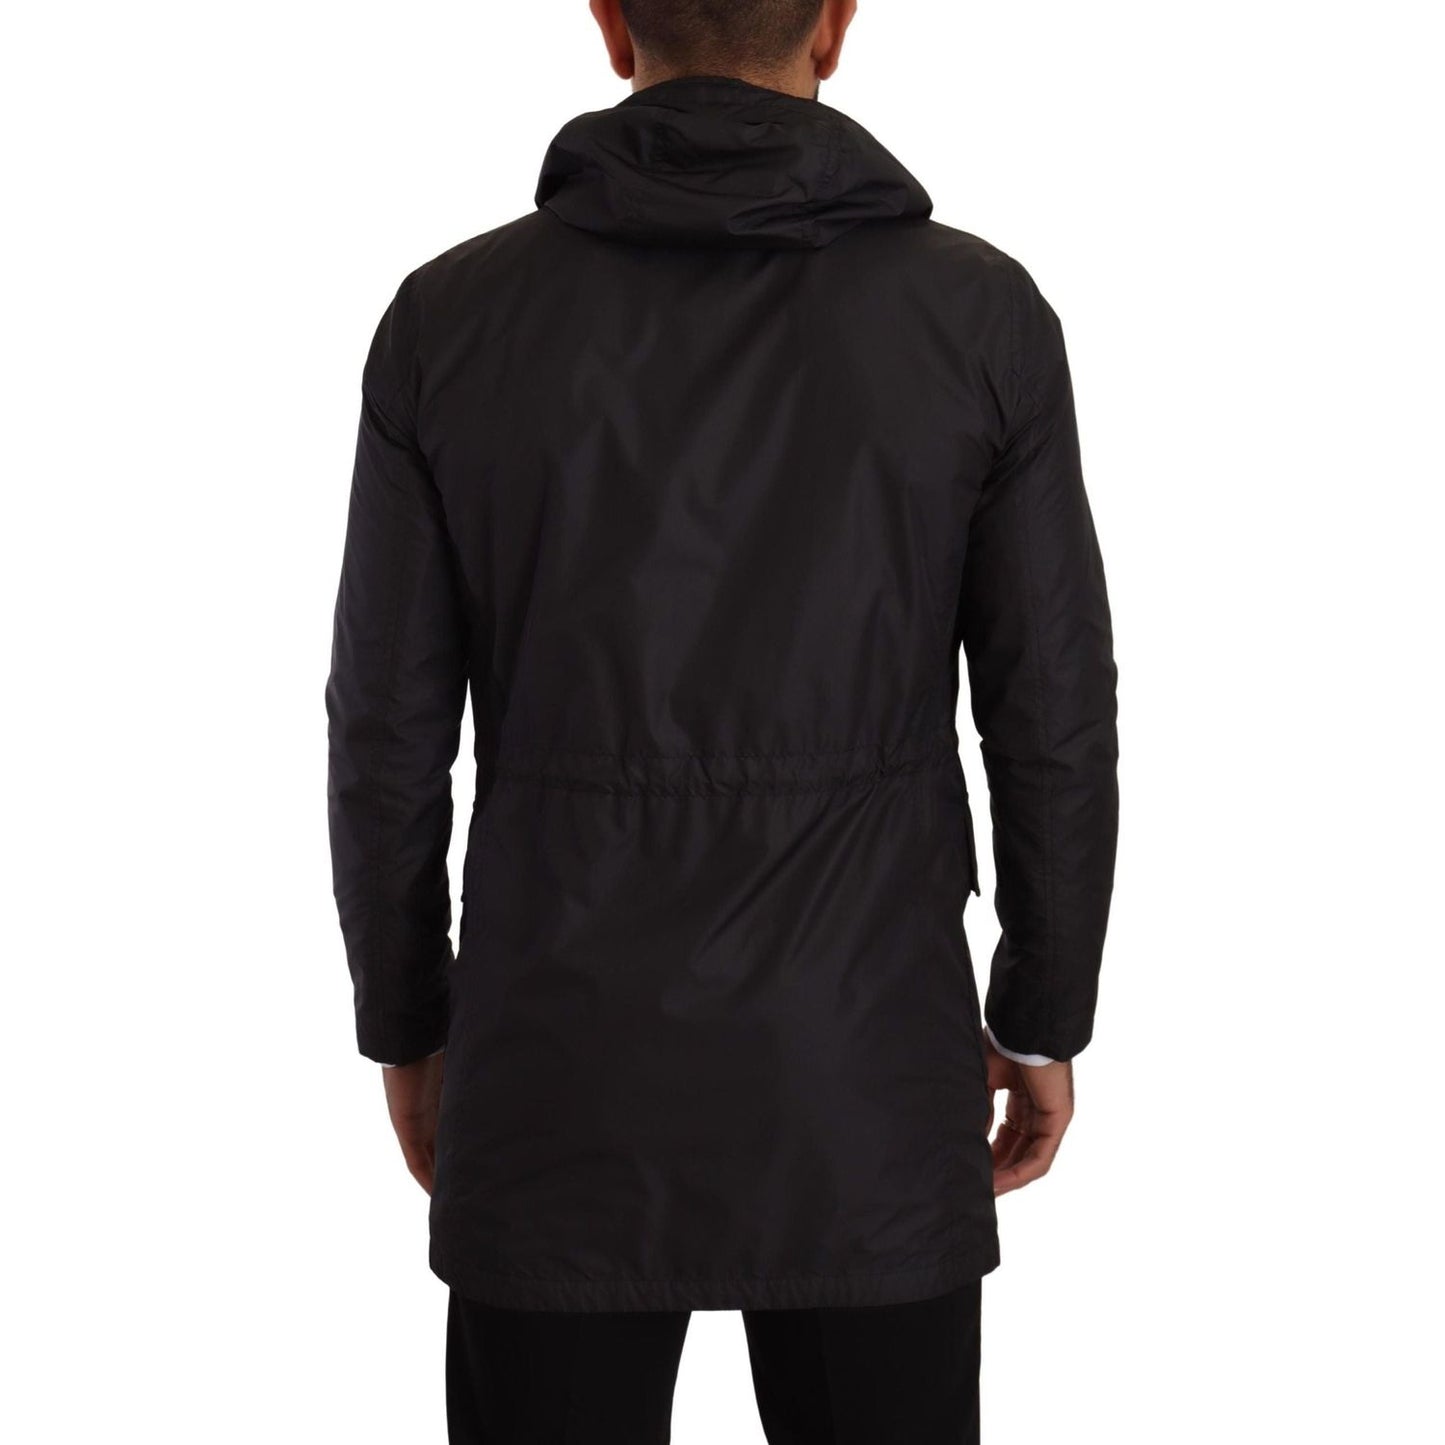 Dolce & Gabbana Elegant Black Parka Hooded Jacket black-polyester-hooded-parka-coat-jacket-2